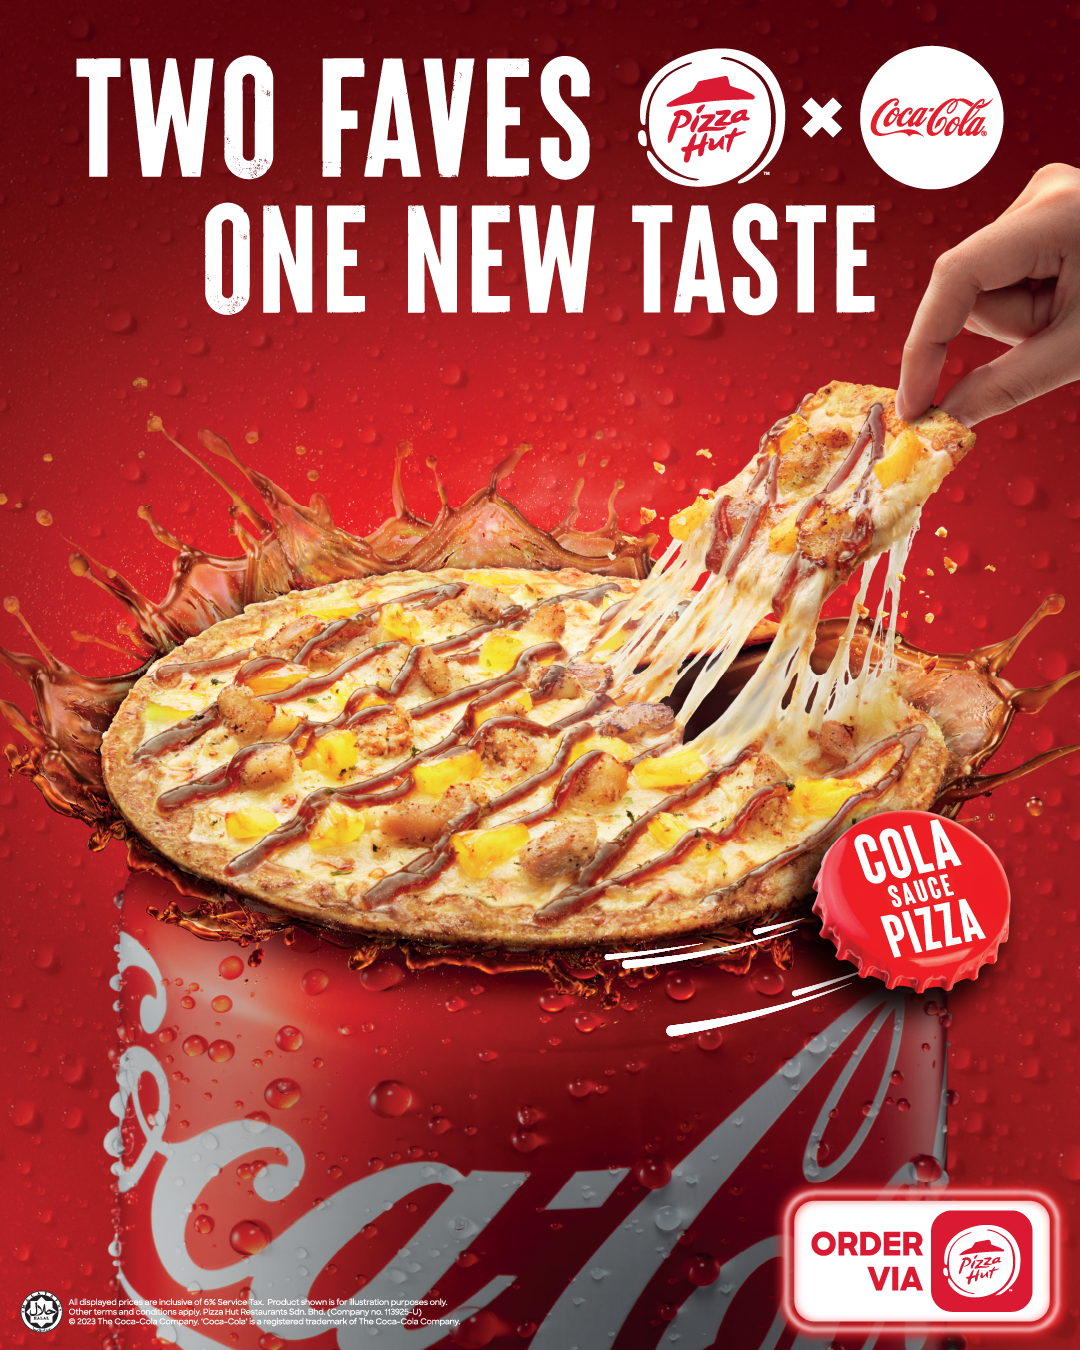 Pizza hut malaysia and coca-cola unite to unveil